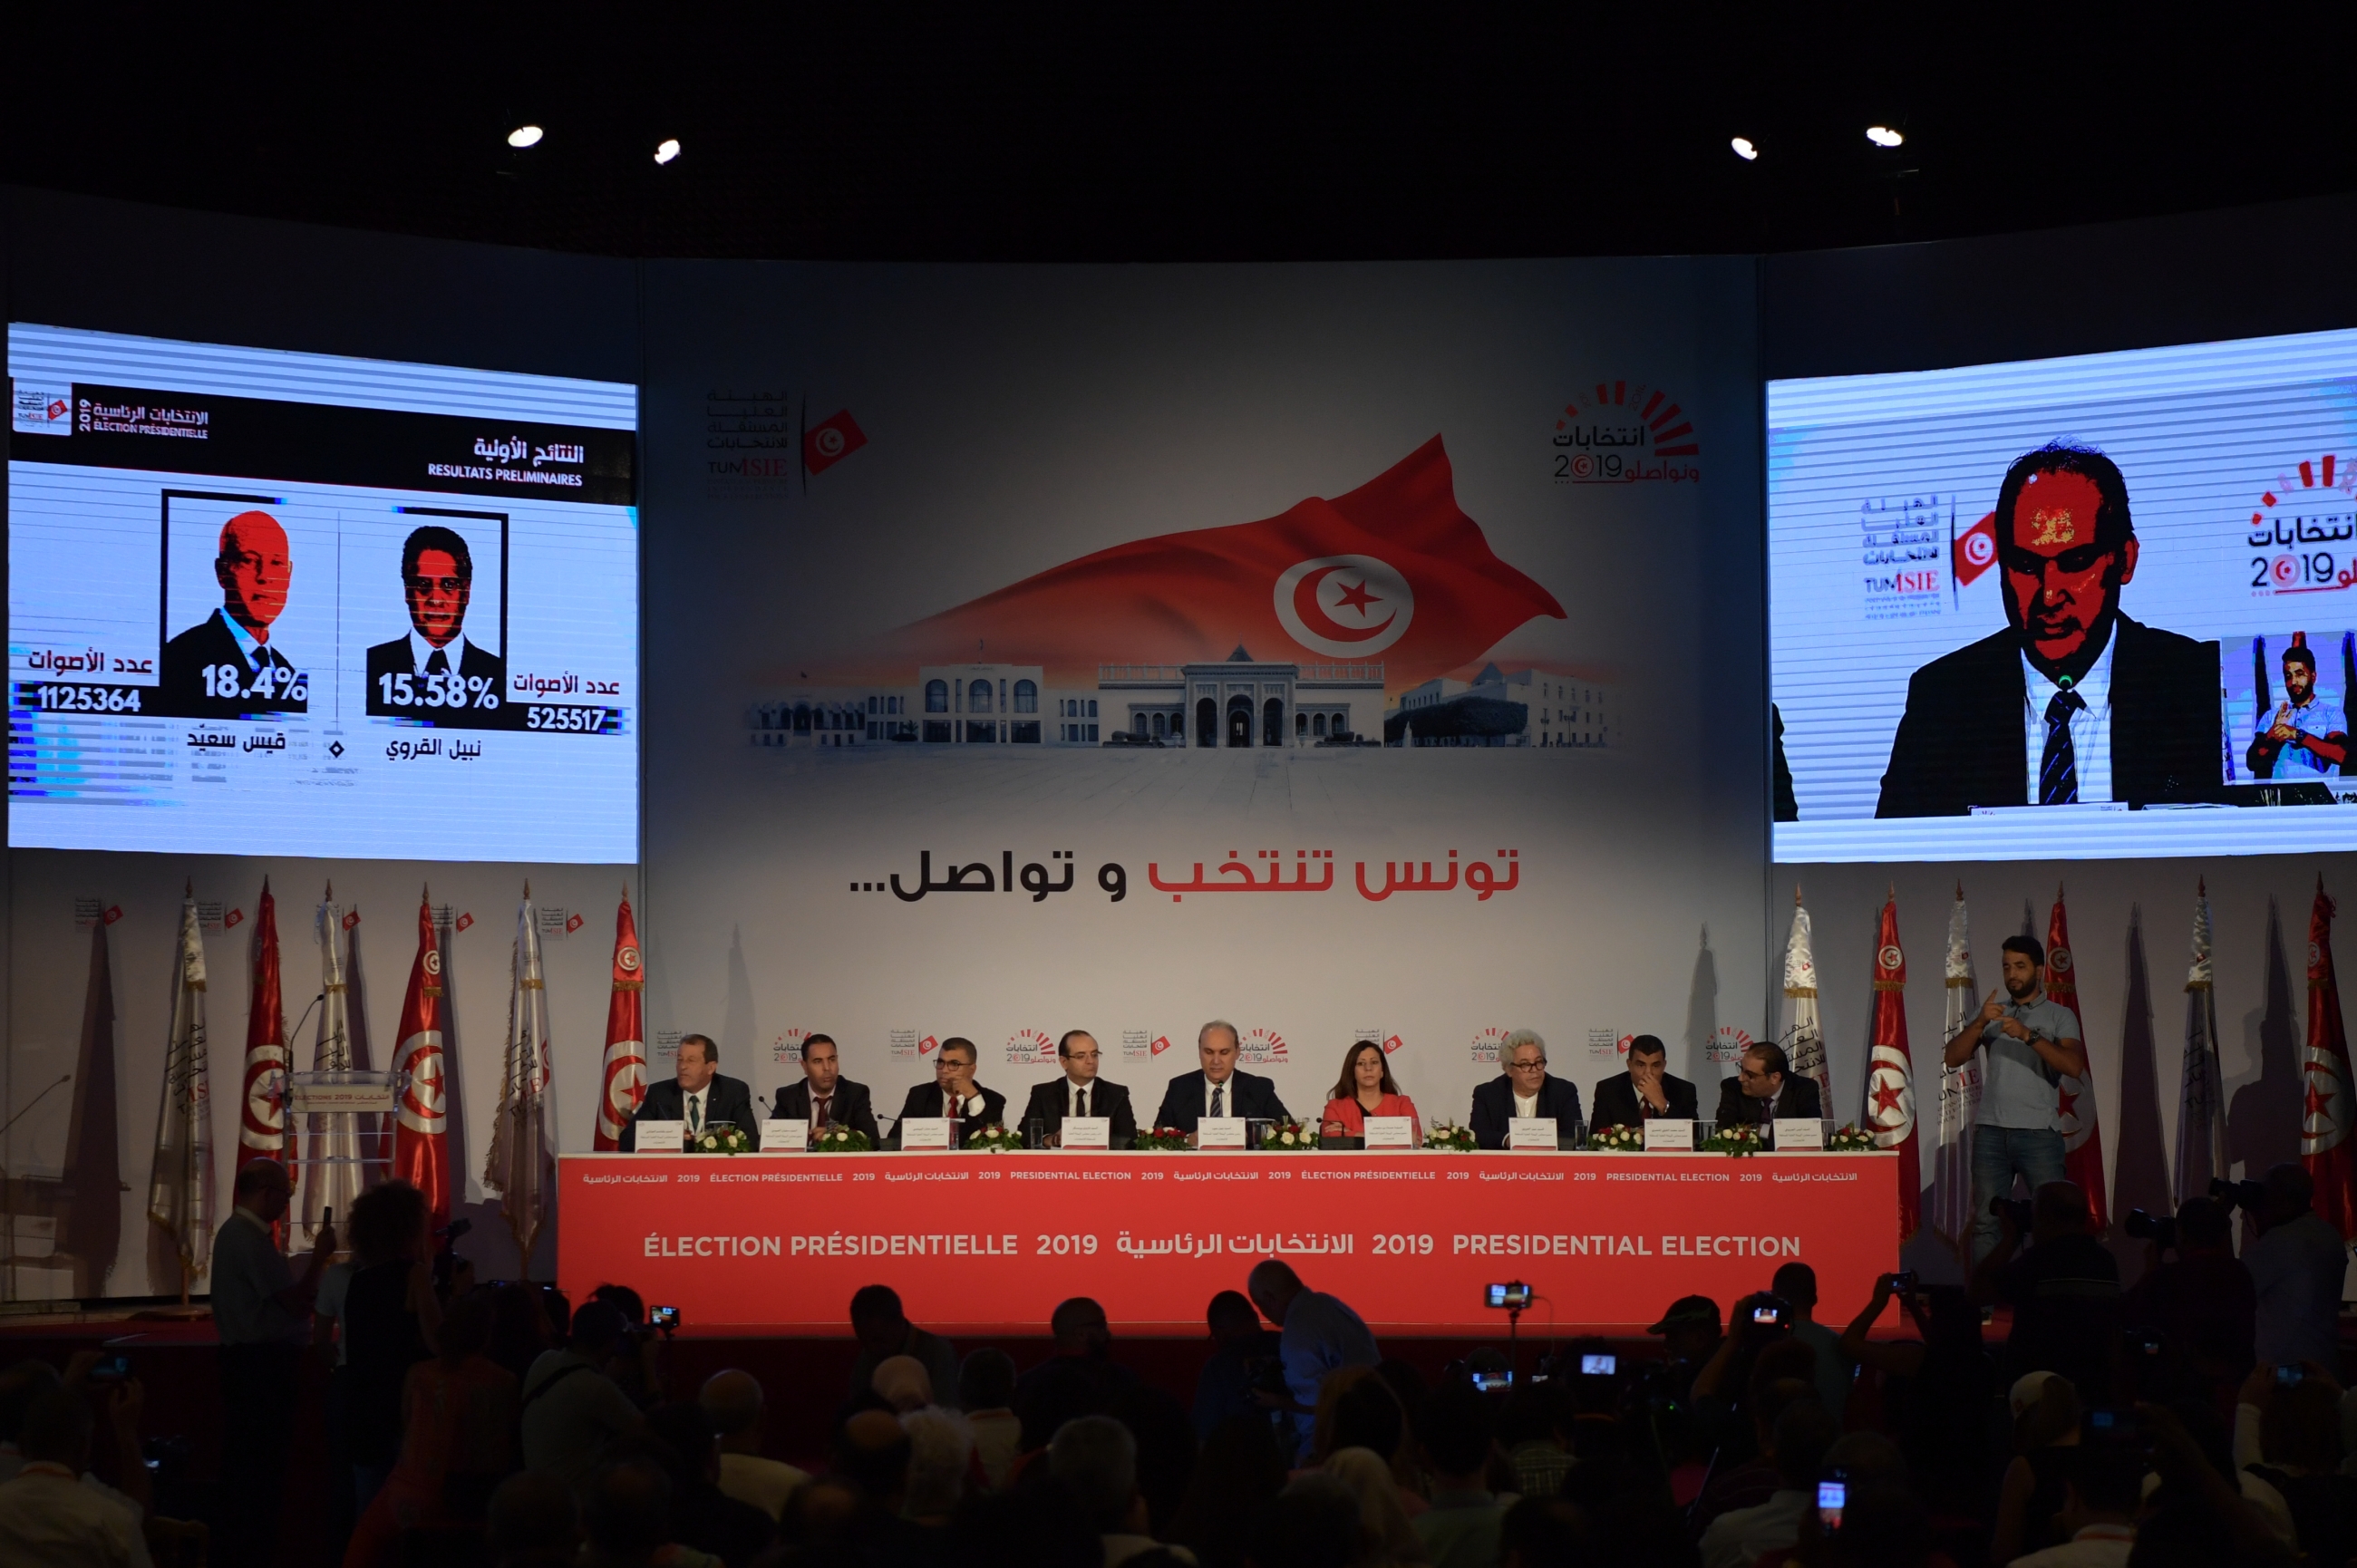 Nabil Baffoun, chef de l’Autorité supérieure indépendante pour les élections (ISIE), annonce les résultats officiels de l’élection présidentielle lors d’une conférence de presse, à Tunis, le 17 septembre 2019 (AFP)